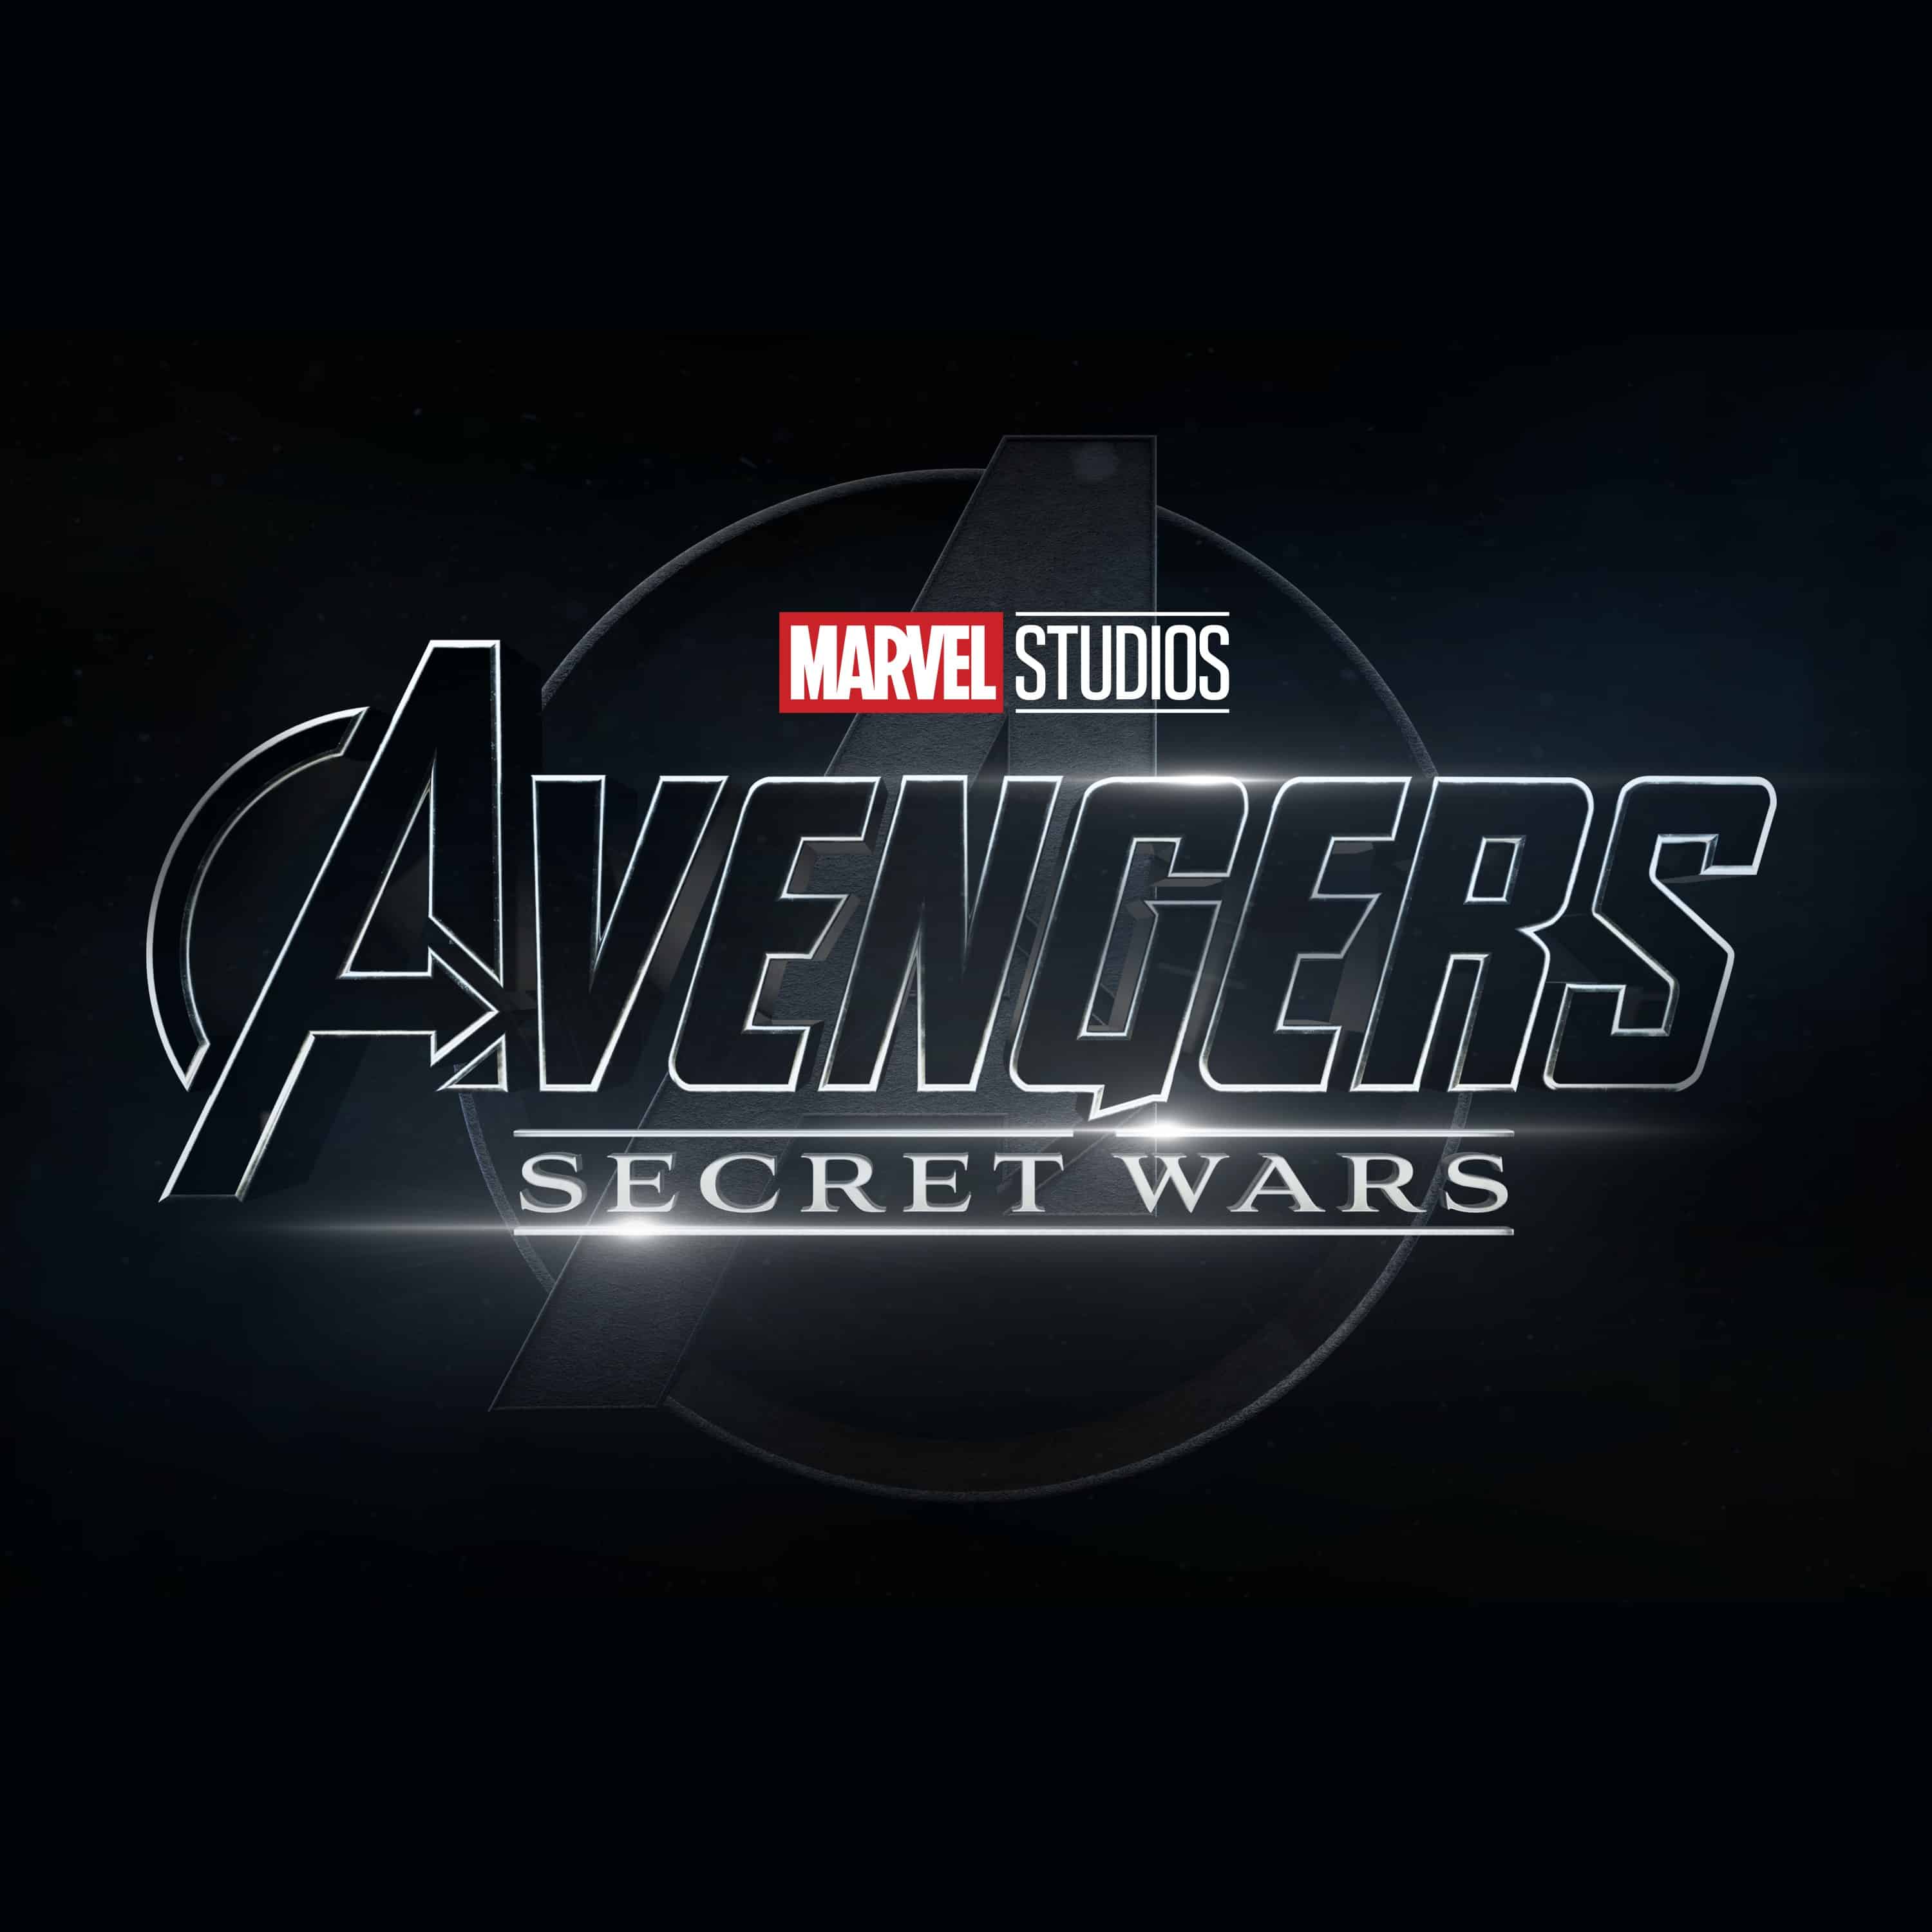 Marvel Sinematik Evreni'nde 6. Evre Fantastic Four ile başlayacak